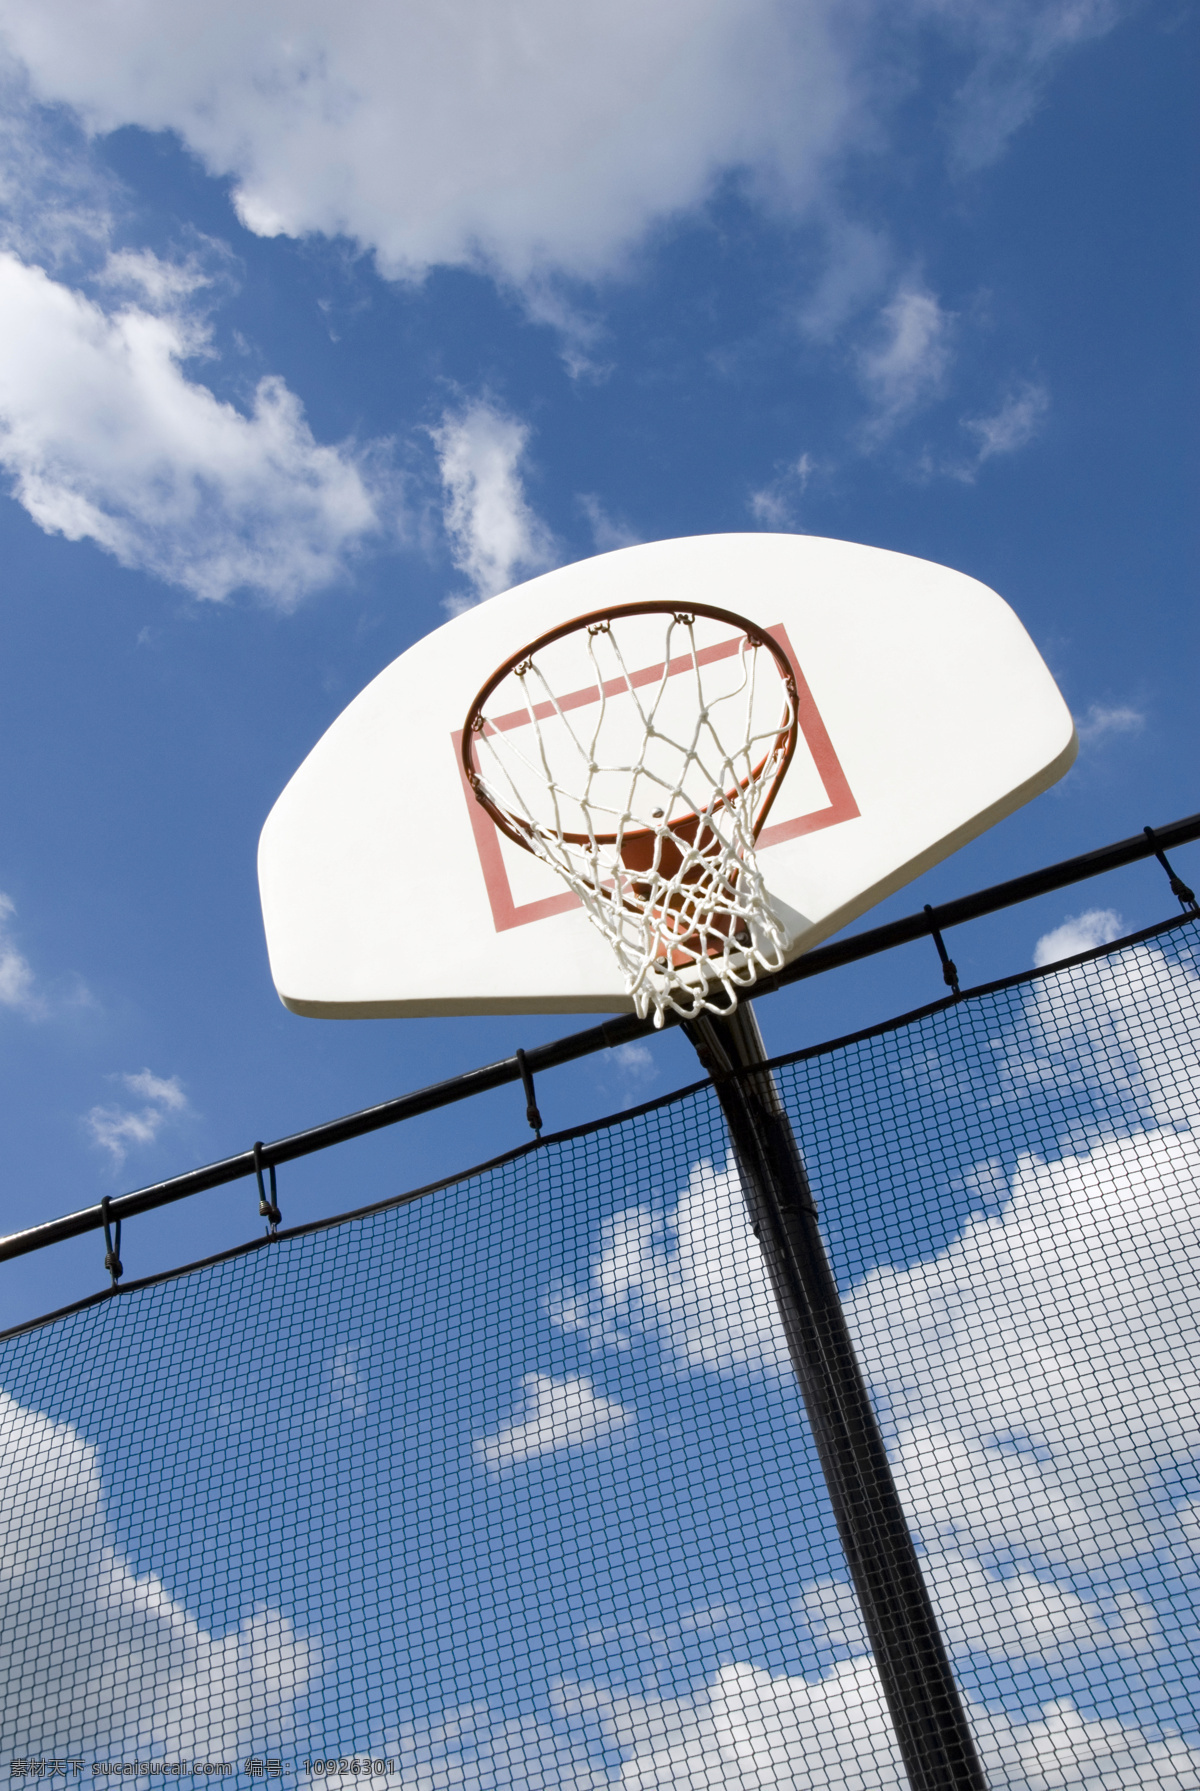 篮球 篮球架 体育 体育运动 天空 文化艺术 运动 设施 篮球设施 球狂 球网 psd源文件